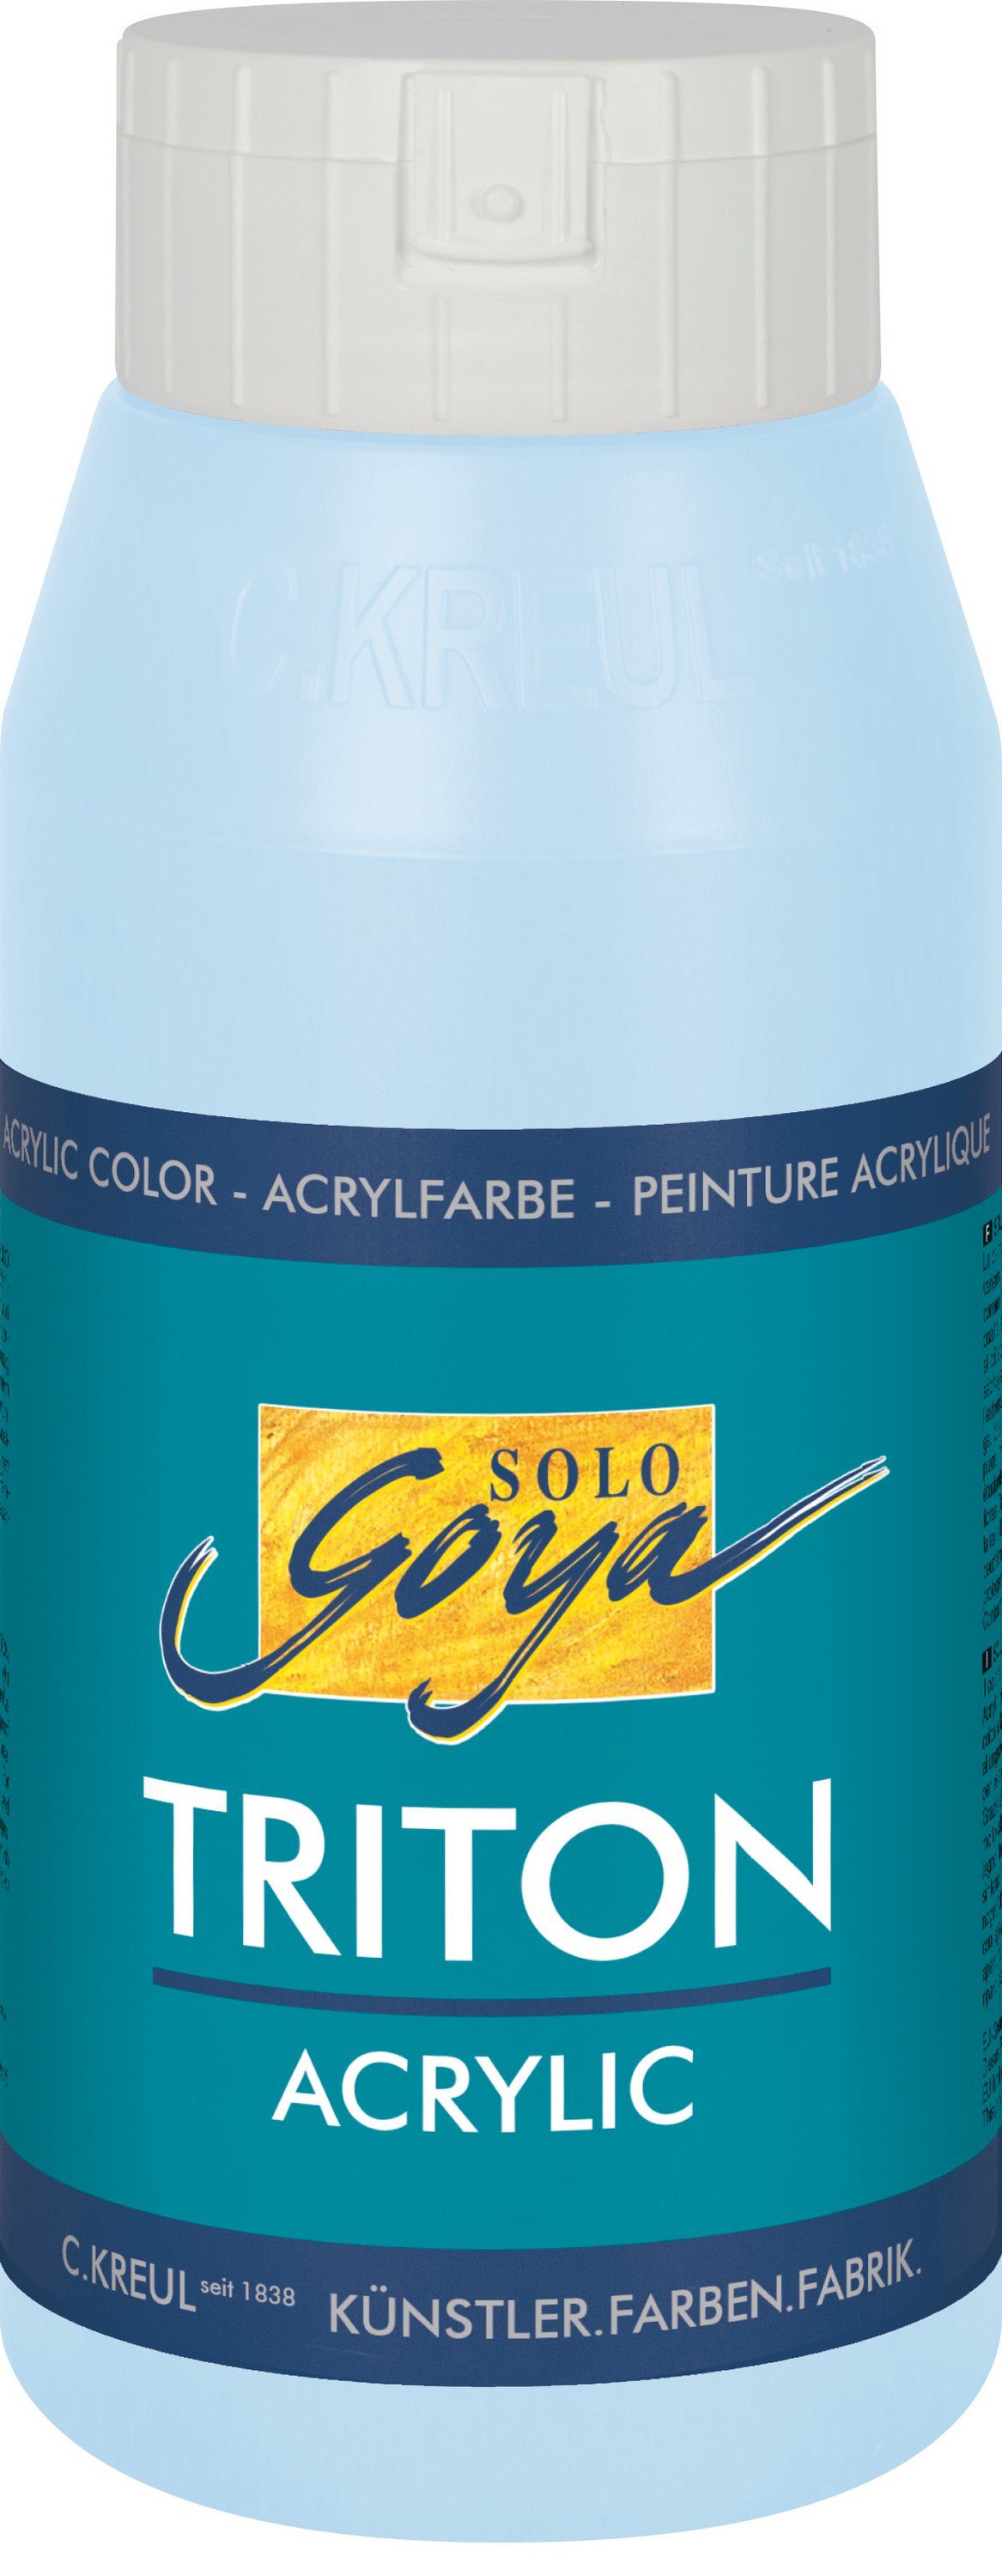 Kreul Acrylfarbe Solo Goya Triton Acrylic, 750 ml Himmelblau hell